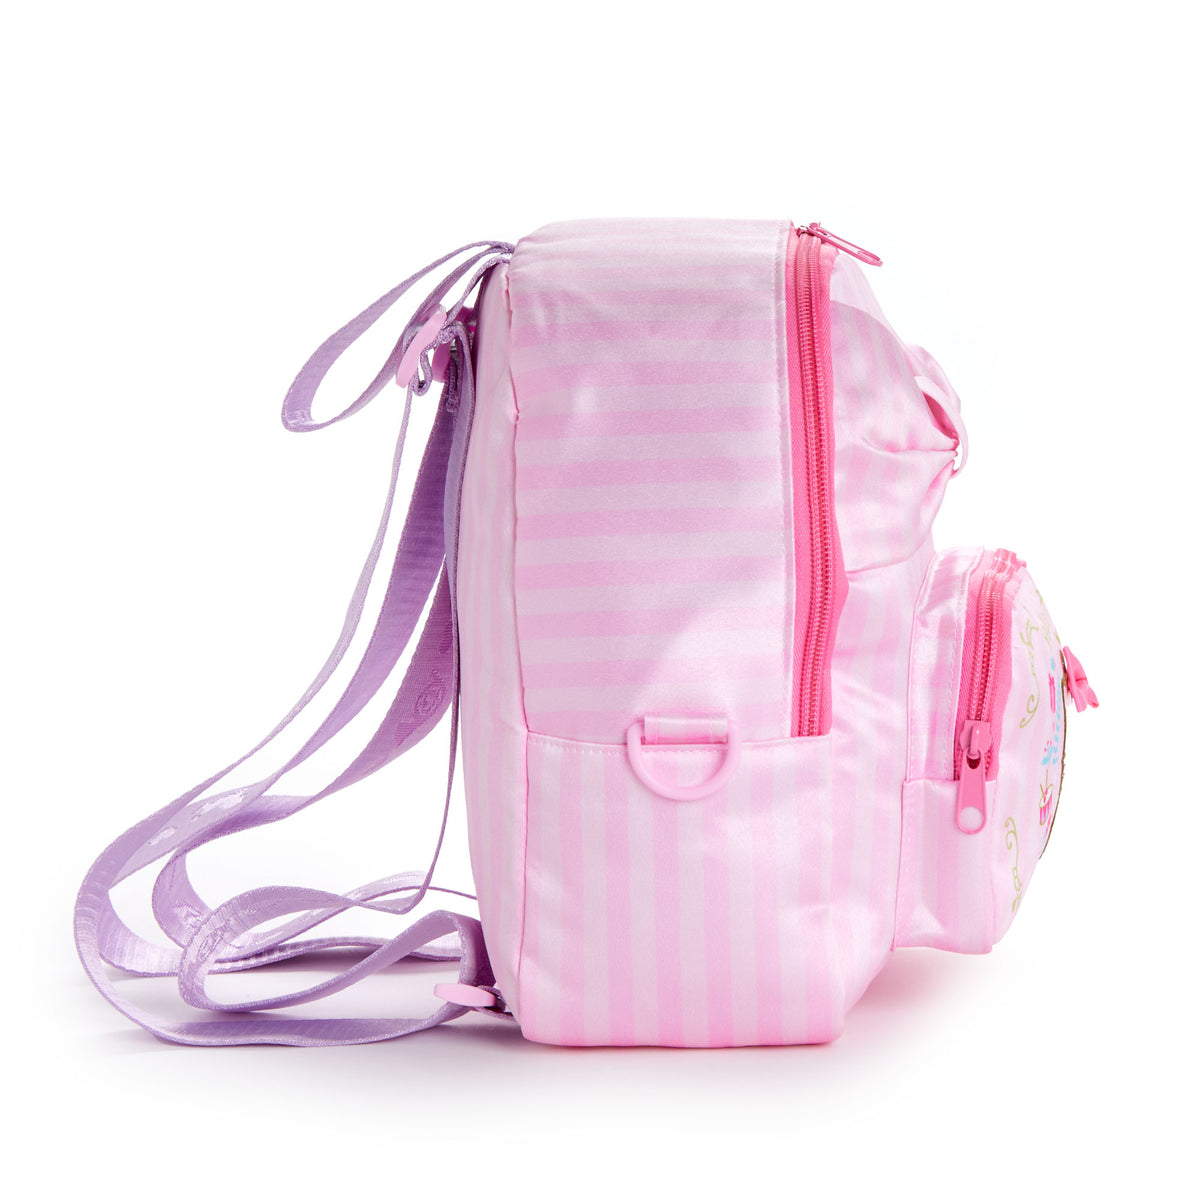 Hello Kitty Mini Backpack (Holiday Nutcracker Series) Bags NAKAJIMA CORPORATION   